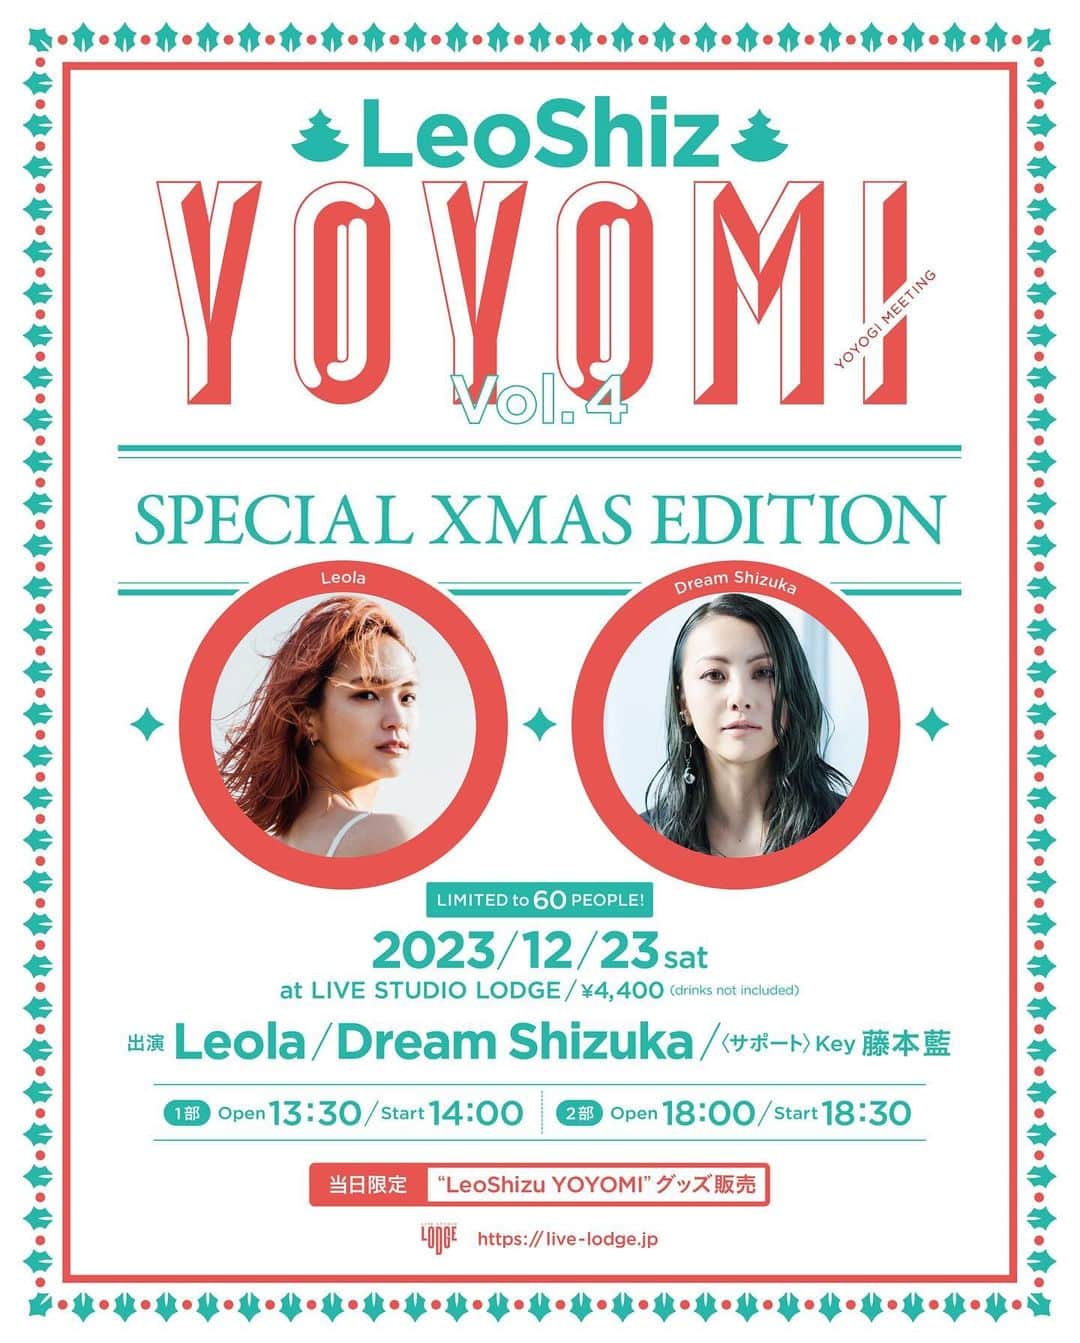 Shizukaのインスタグラム：「-LeoShiz- YOYOMI vol.4 Special Xmas Edition  2023年Last YOYOMI🙌 今年からLeolaちゃんと一緒にSTARTした このYOYOMIも第4回目を迎えることができました🩵  毎公演、即完という嬉しい報告をいただけるたび 嬉しさとホッと一安心しています☺️  今回は12/23(土)の開催ということで 今年LastとXmasを一緒に楽しもうぜ‼︎的な Live内容になっています🎄  一公演60名様限定で座席もご用意して そして今回はスペシャルサポートに 藤本藍さんをお迎えして 盛りだくさんなLiveをゆったりまったり 時には騒いで… 一日限りの特別な時間を一緒に過ごせたらと思っています🌟  一人でも多くの方に このLiveに来ていただけますように…💫  今回もYOYOMIお決まりのリクエストを このPostのコメントにて募集します📝  リクエストテーマは "今年最後に聴きたい冬のうた" (※お互いの楽曲以外) ⚠️受付期間 : 12/3(日) 23:59迄⚠️  是非、文章をよく読んで、よーく考えてから それぞれの思い出の冬のうたを コメント欄に書き込んで参加していただけたら 嬉しいです❣️  会場限定のグッズも色々と販売されたり 前回大好評だったオリジナルドリンクも販売予定です🍸  もしかしたら…サンタも来てくれるかも……🤶🏻🎅🏻⁉︎  Xmas&2023年の締めくくりを YOYOMIで是非、一緒に過ごしましょう😃  ※ 🎫チケット販売が 1st. / 2nd. それぞれ別のURLとなっていますので お間違えのないようご注意ください。  ↓ 2023/12/23(土) -LeoShiz- YOYOMI vol.4 Special Xmas Edition in LIVE STUDIO LODGE [東京都渋谷区代々木1丁目30-1 代々木パークビルB1F]  出演 Leola / Dream Shizuka Special support : Key 藤本藍  ＜1部＞OPEN 13:30 / START 14:00 ＜2部＞OPEN 18:00 / START 18:30 (各公演 60名様限定 座席あり) ￥4,400(別途ドリンク代)  #Leola #DreamShizuka #YOYOMI #Xmas #2023Last #みんなでXmasパーティーしようぜ🥳w」